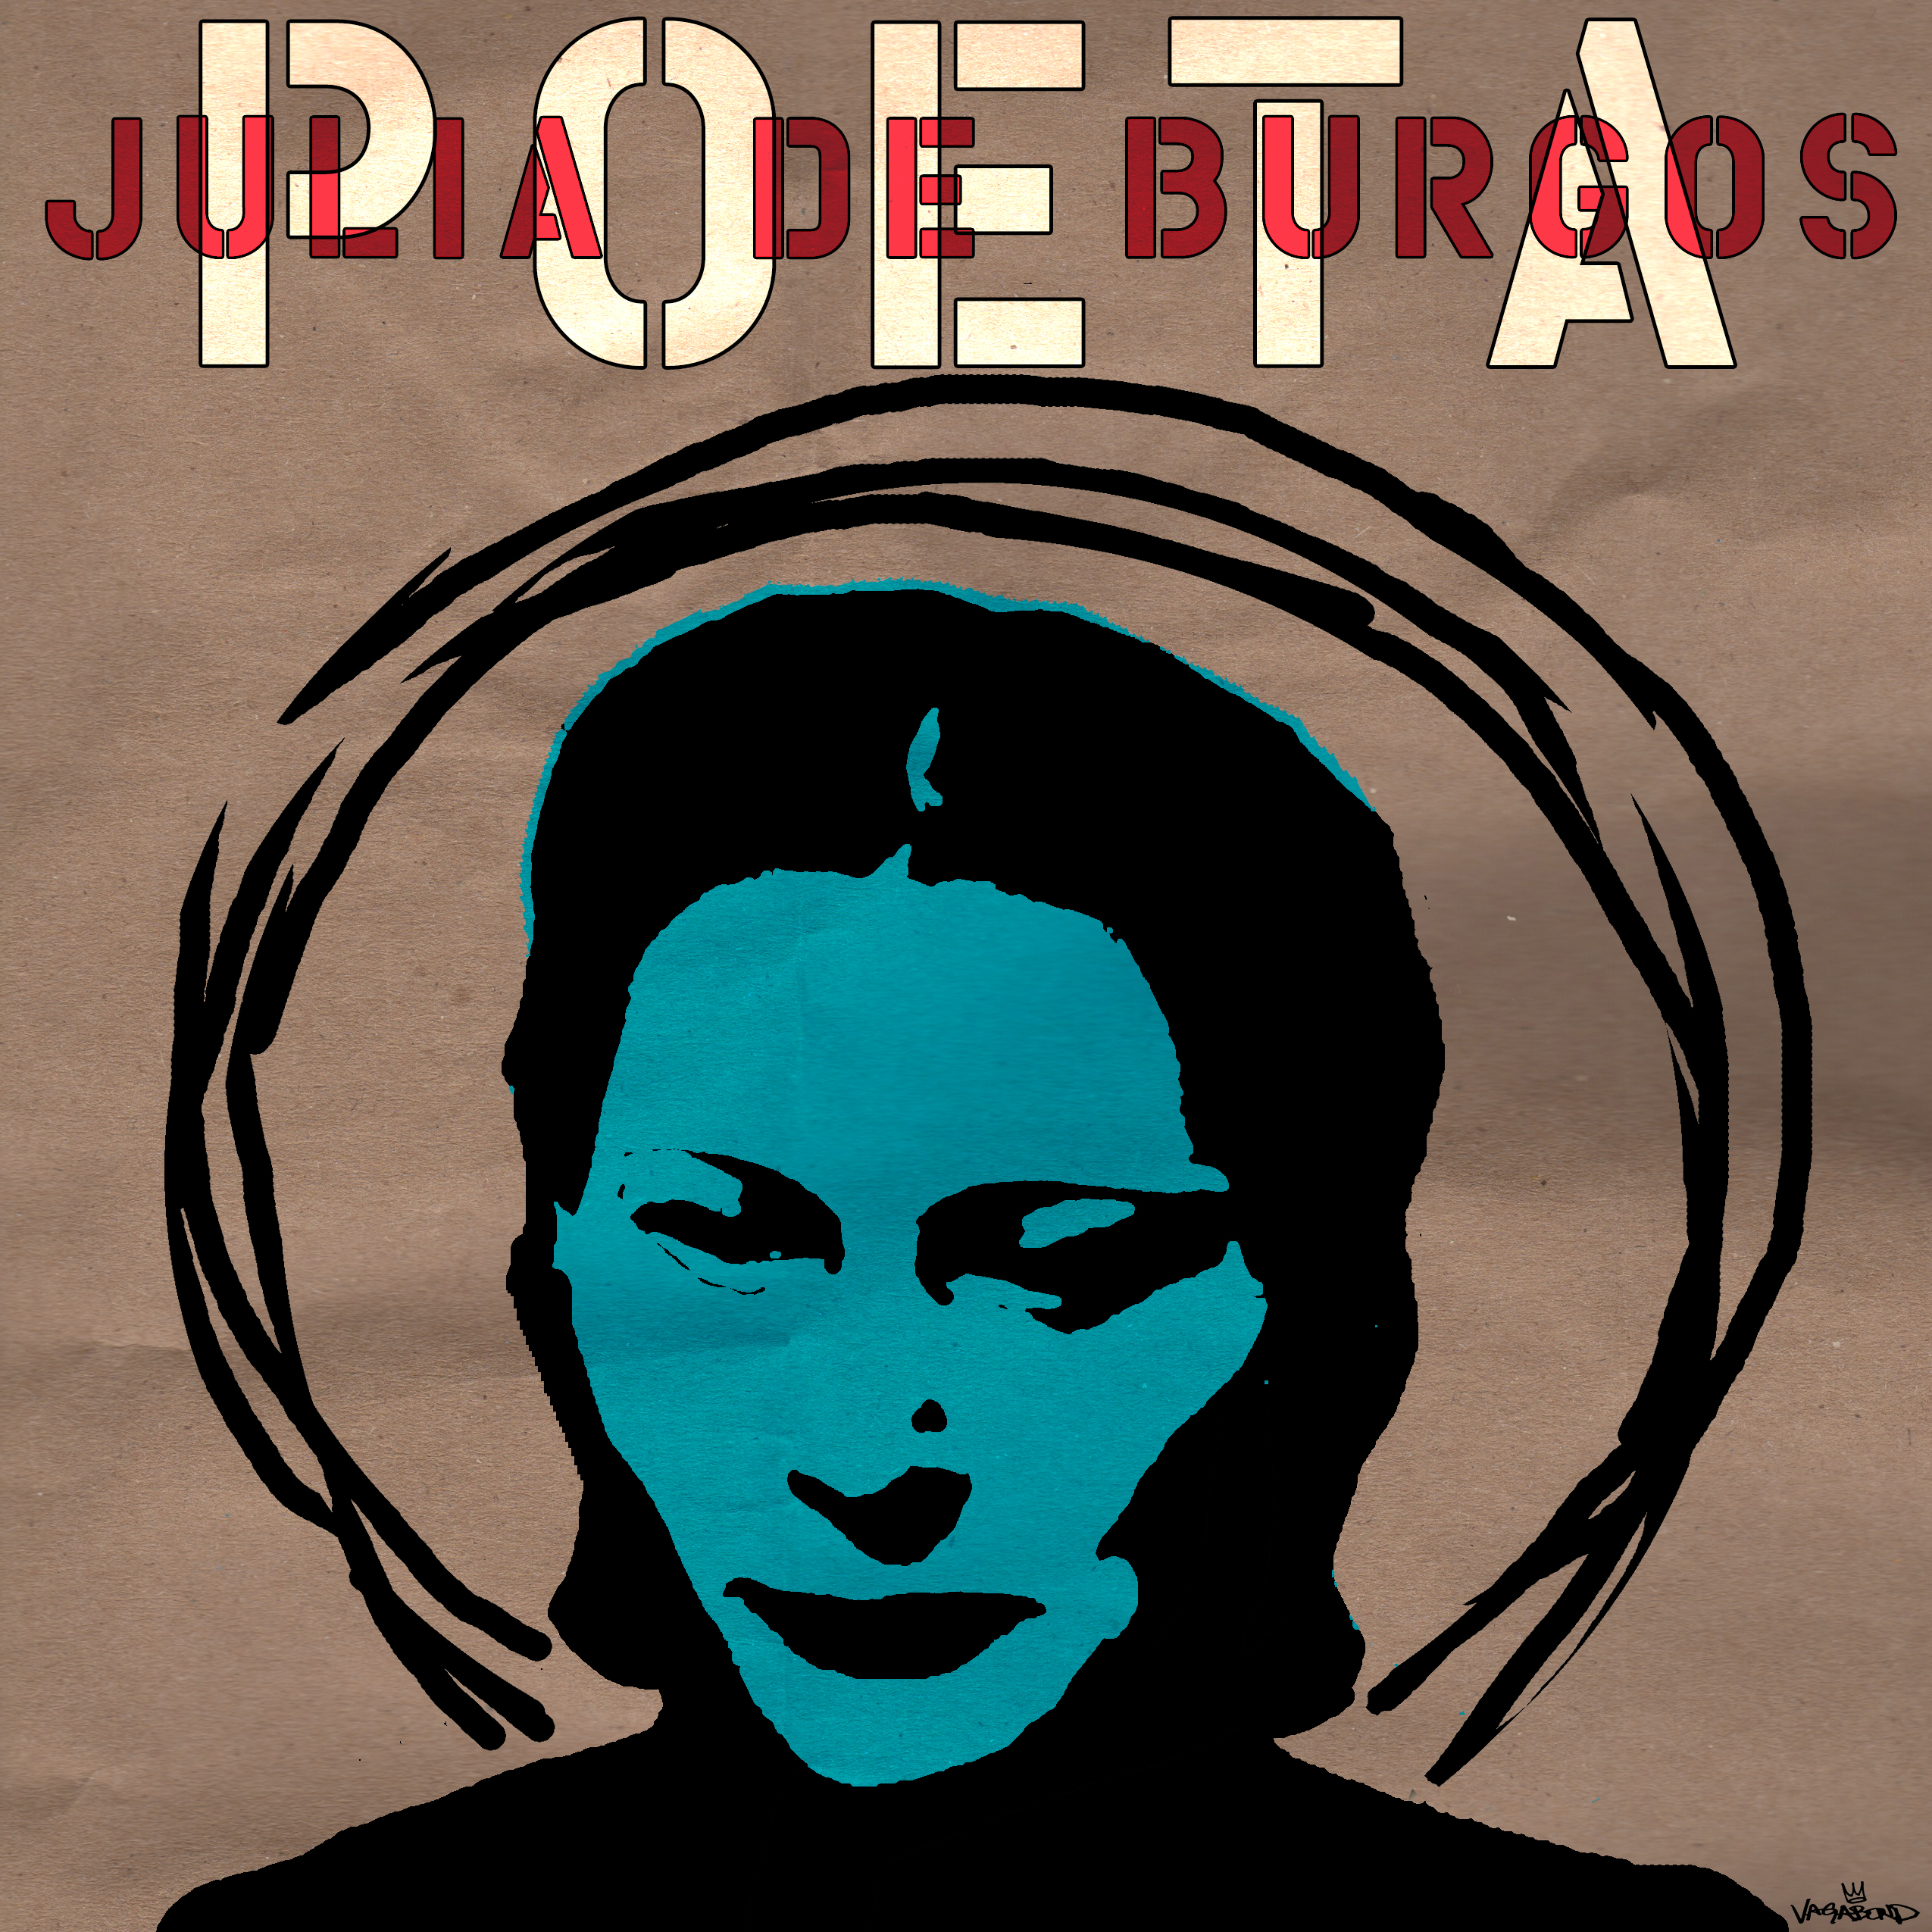 Julia de Burgos